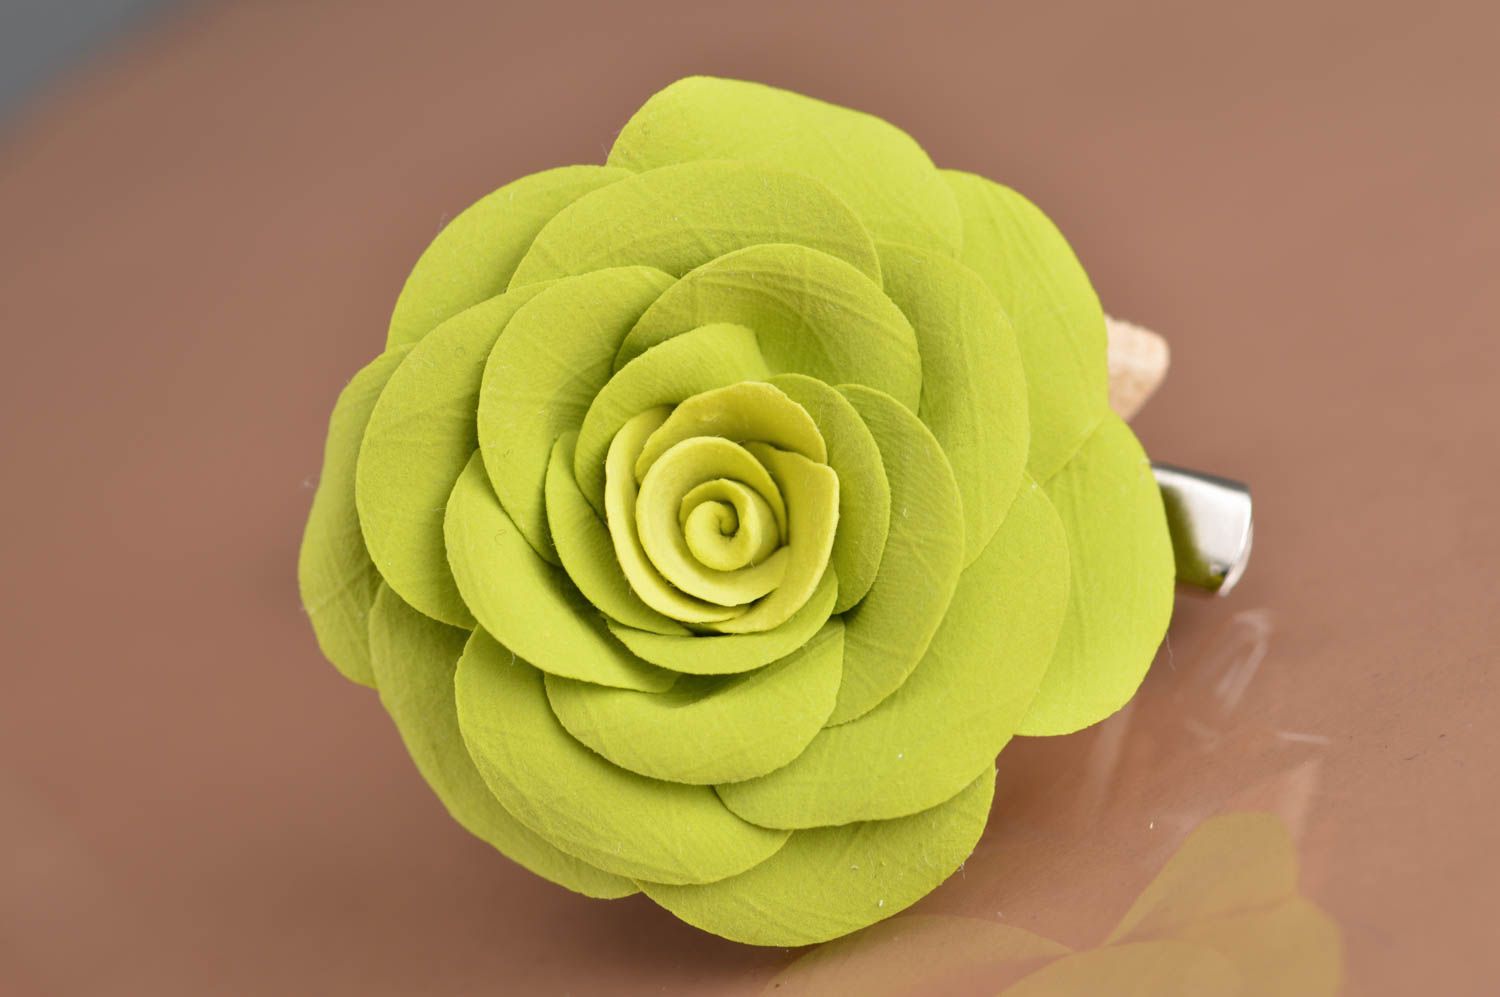 Заколка-брошь из полимерной глины в виде пышной объемной салатовой розы хэндмэйд фото 2